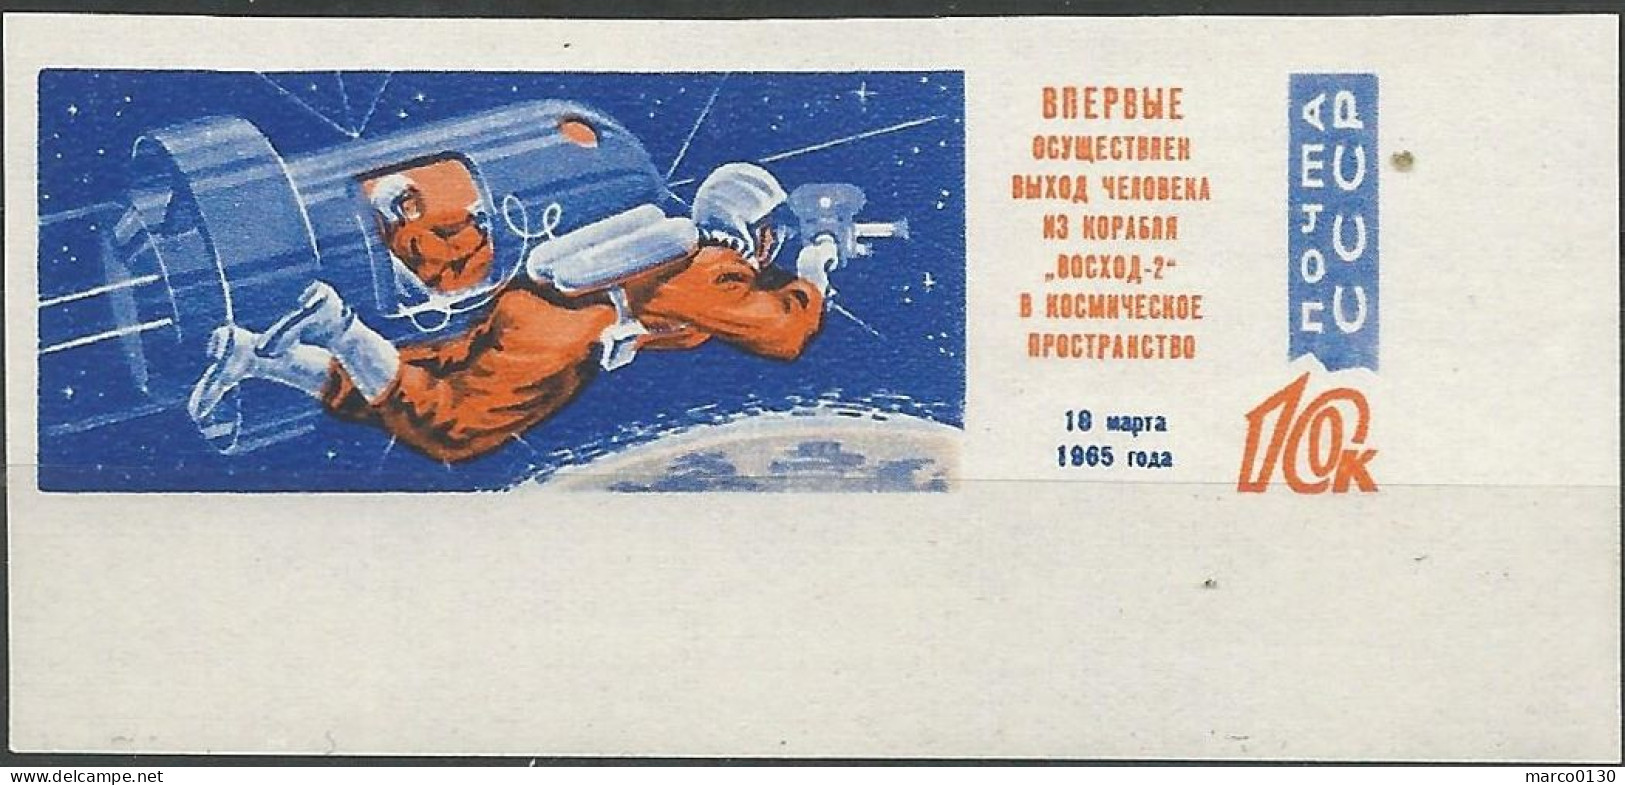 RUSSIE N° 2930a NEUF - Unused Stamps